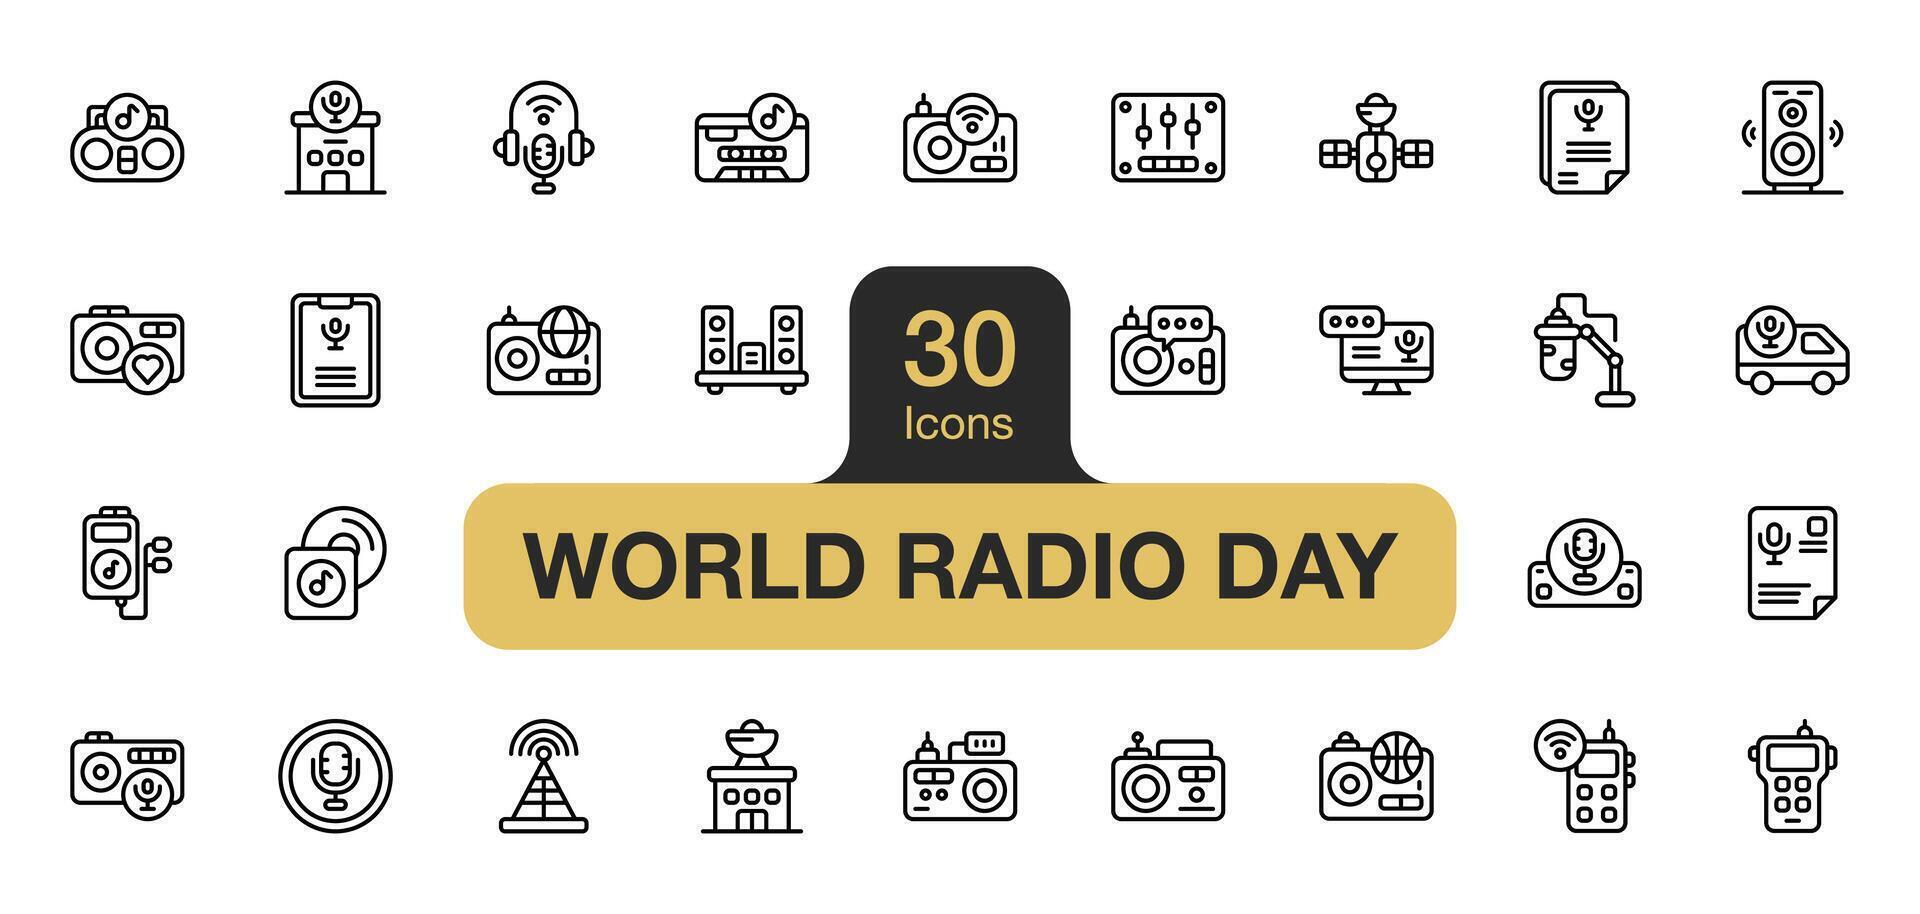 uppsättning av 30 värld radio dag ikon element set. inkluderar leva, på luft, högtalare, radio station, kassett, utjämnare, radio sändare, musik album, och Mer. översikt ikoner vektor samling.